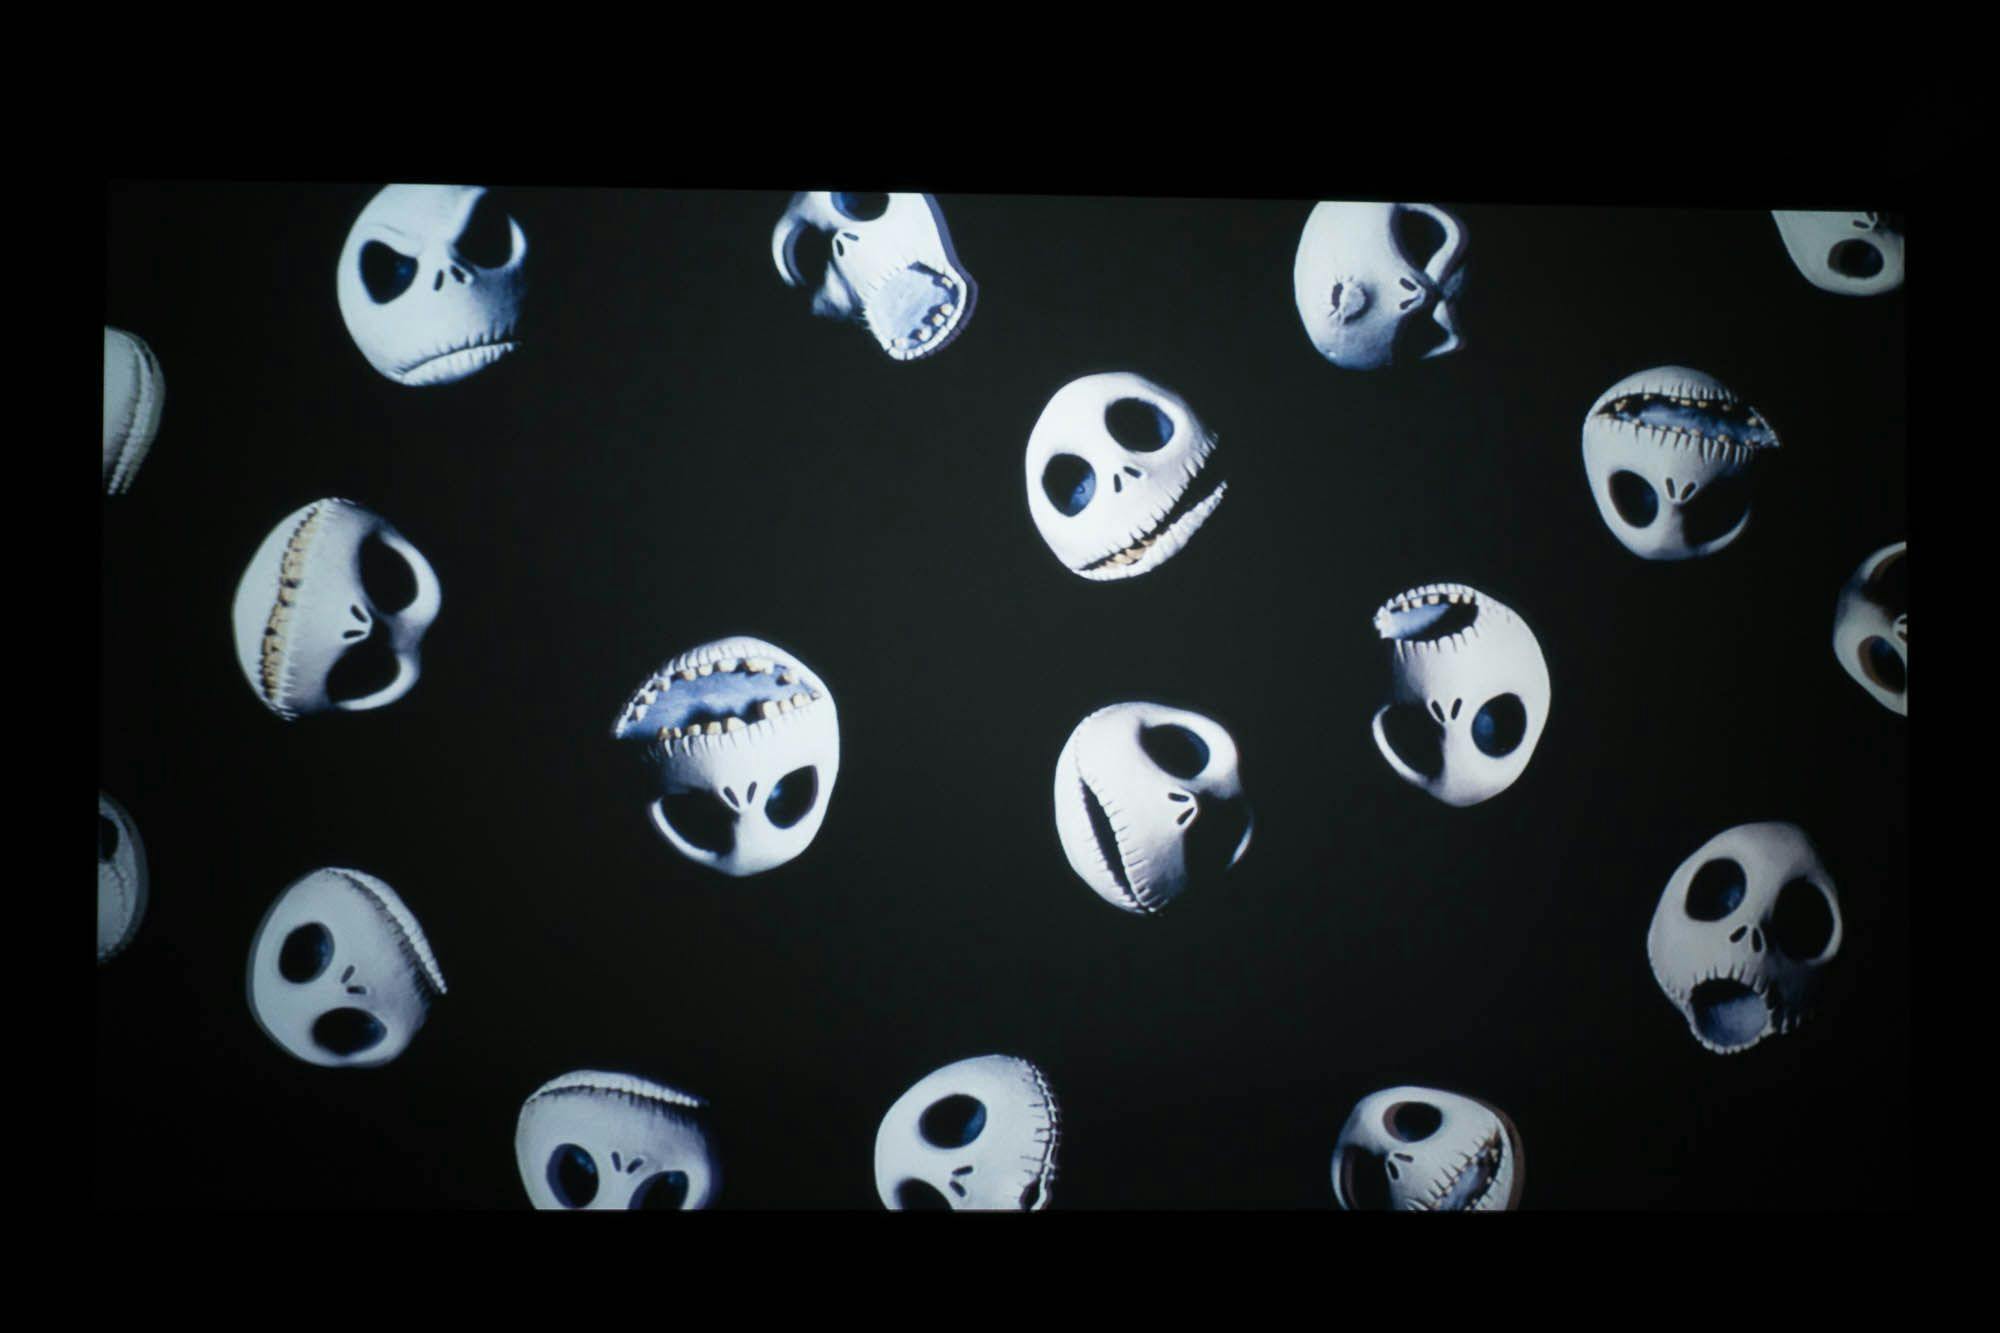 Mega exposição interativa sobre o universo criativo de Tim Burton chega a São Paulo 